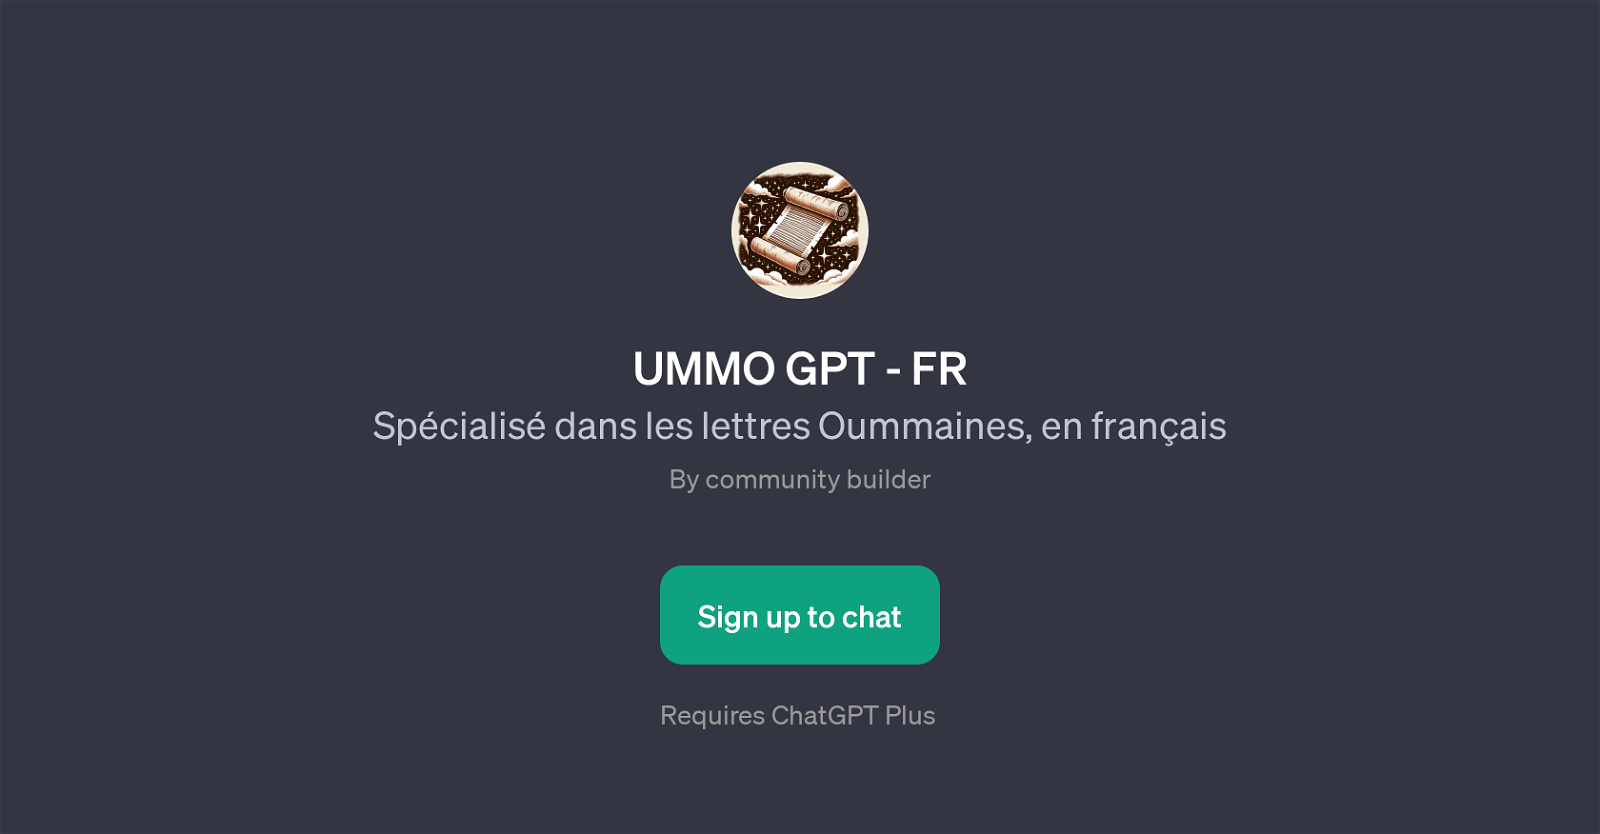 UMMO GPT - FR website